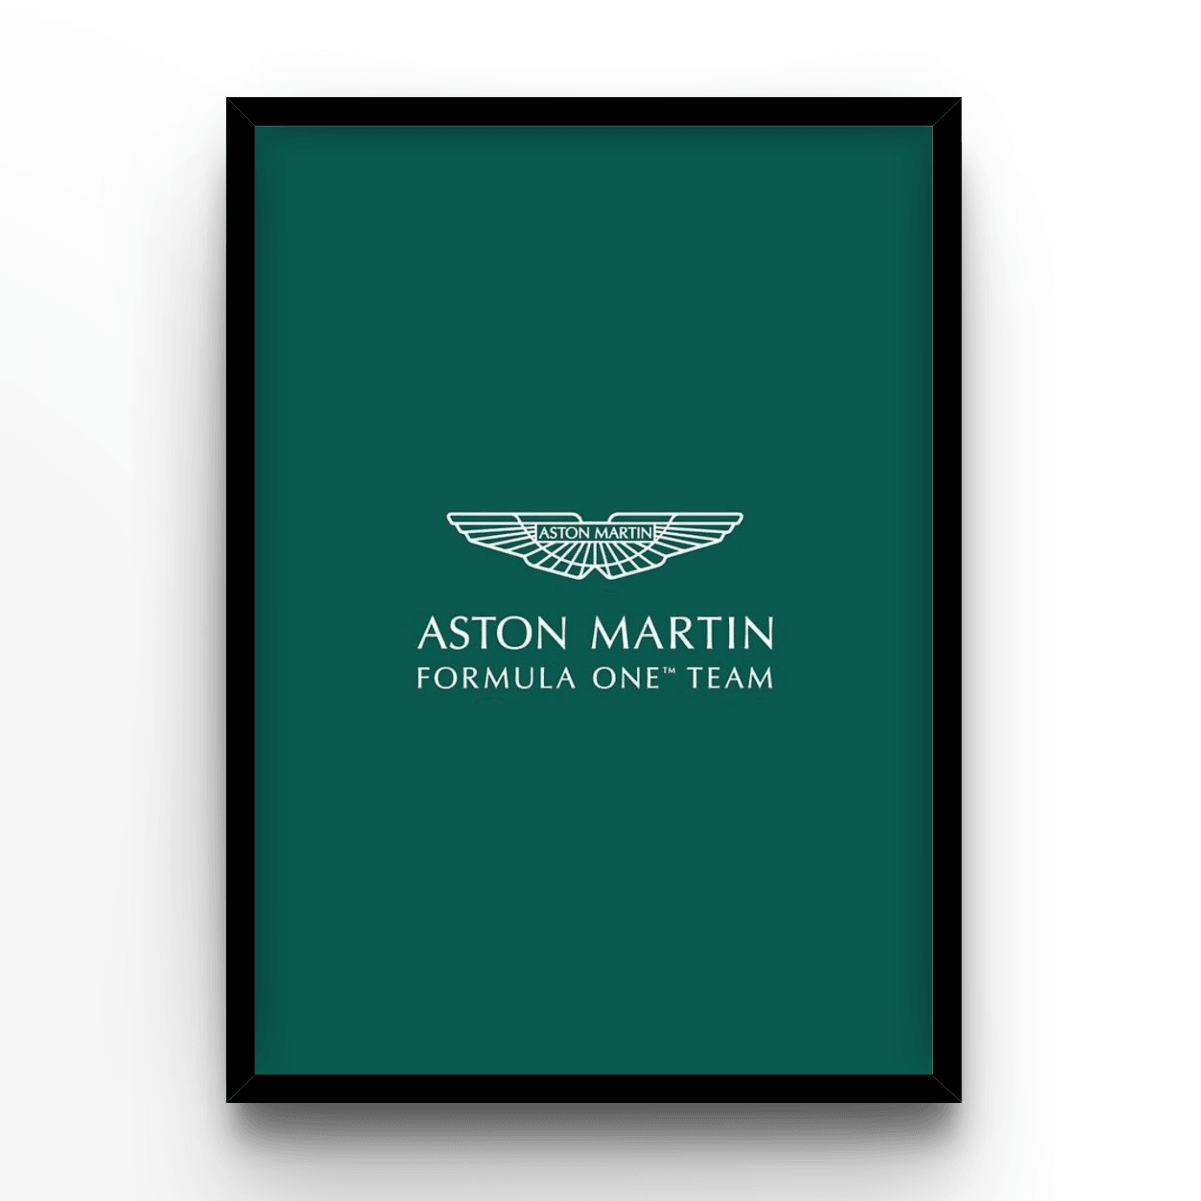 Aston Martin - A4, A3, A2 Posters Base - Poster Print Shop / Art Prints / PostersBase